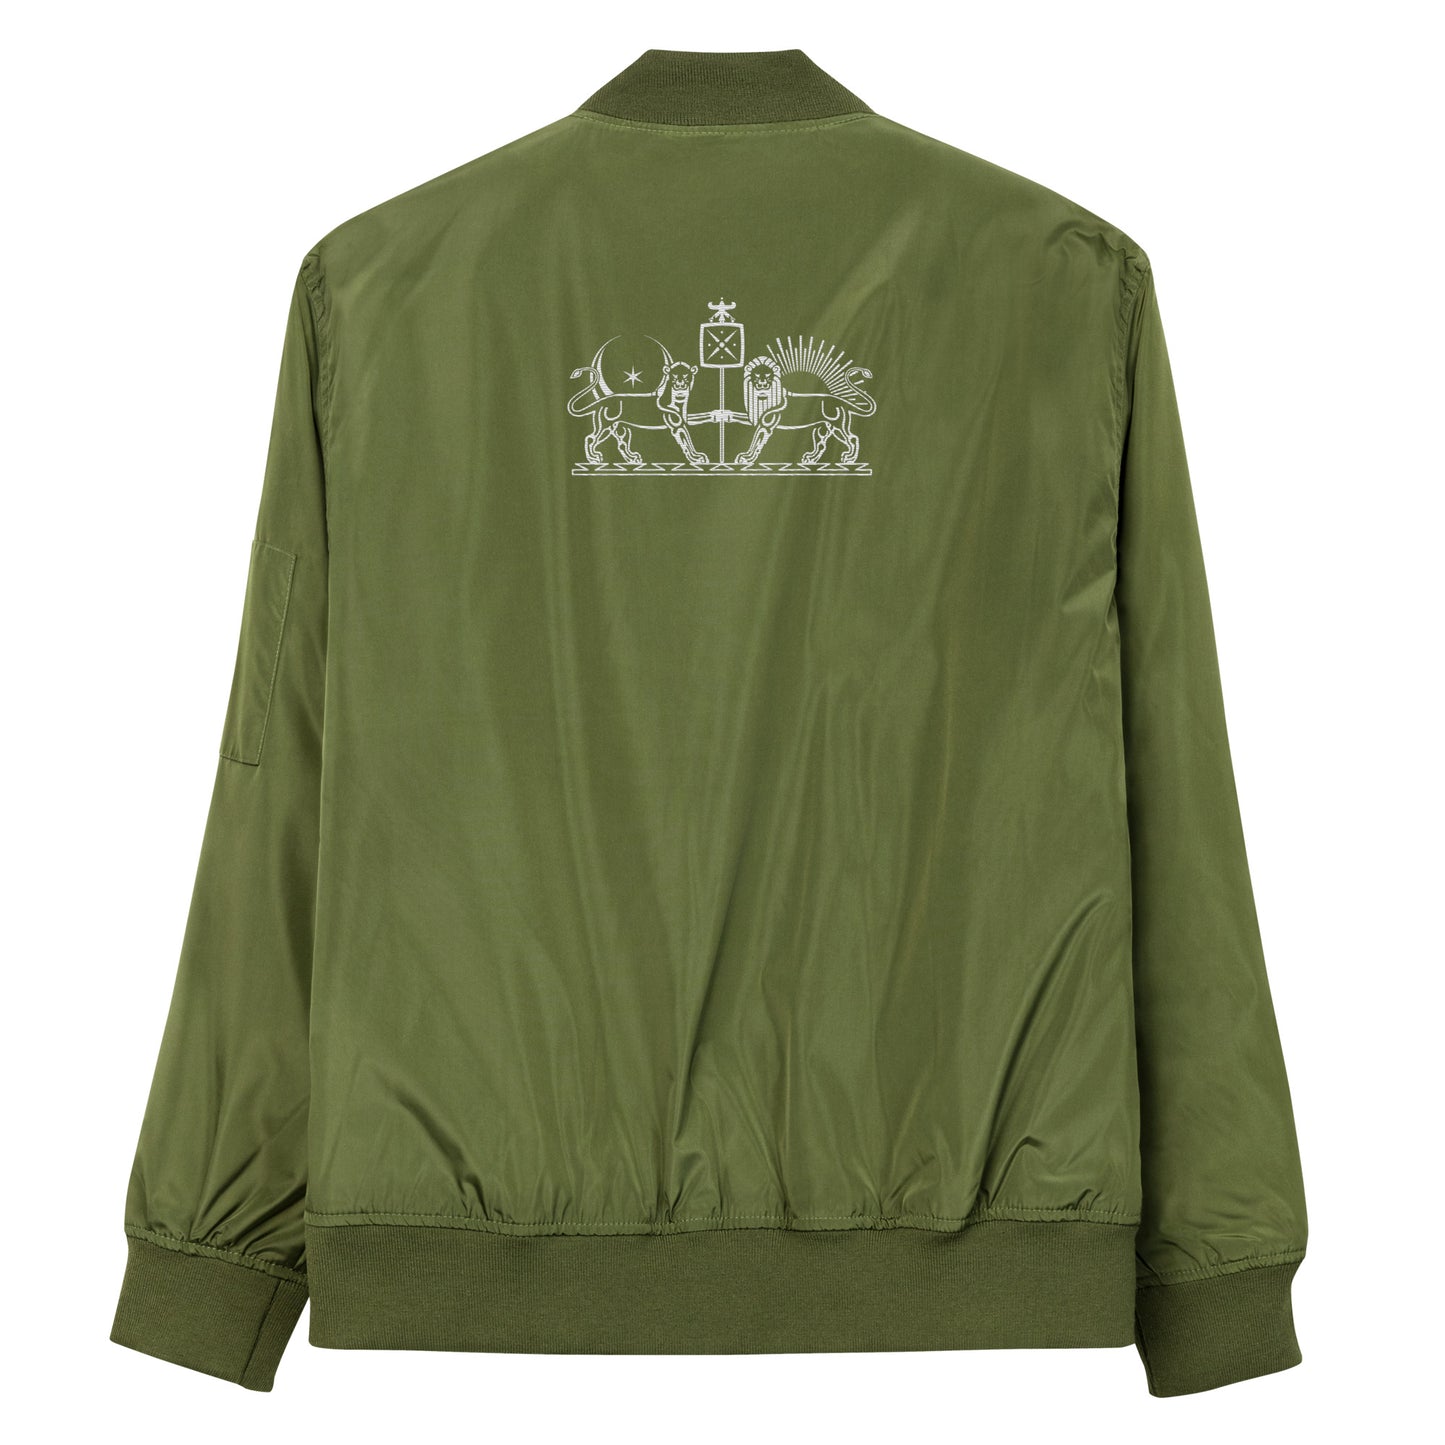 Koryos Premium Eco bomber jacket